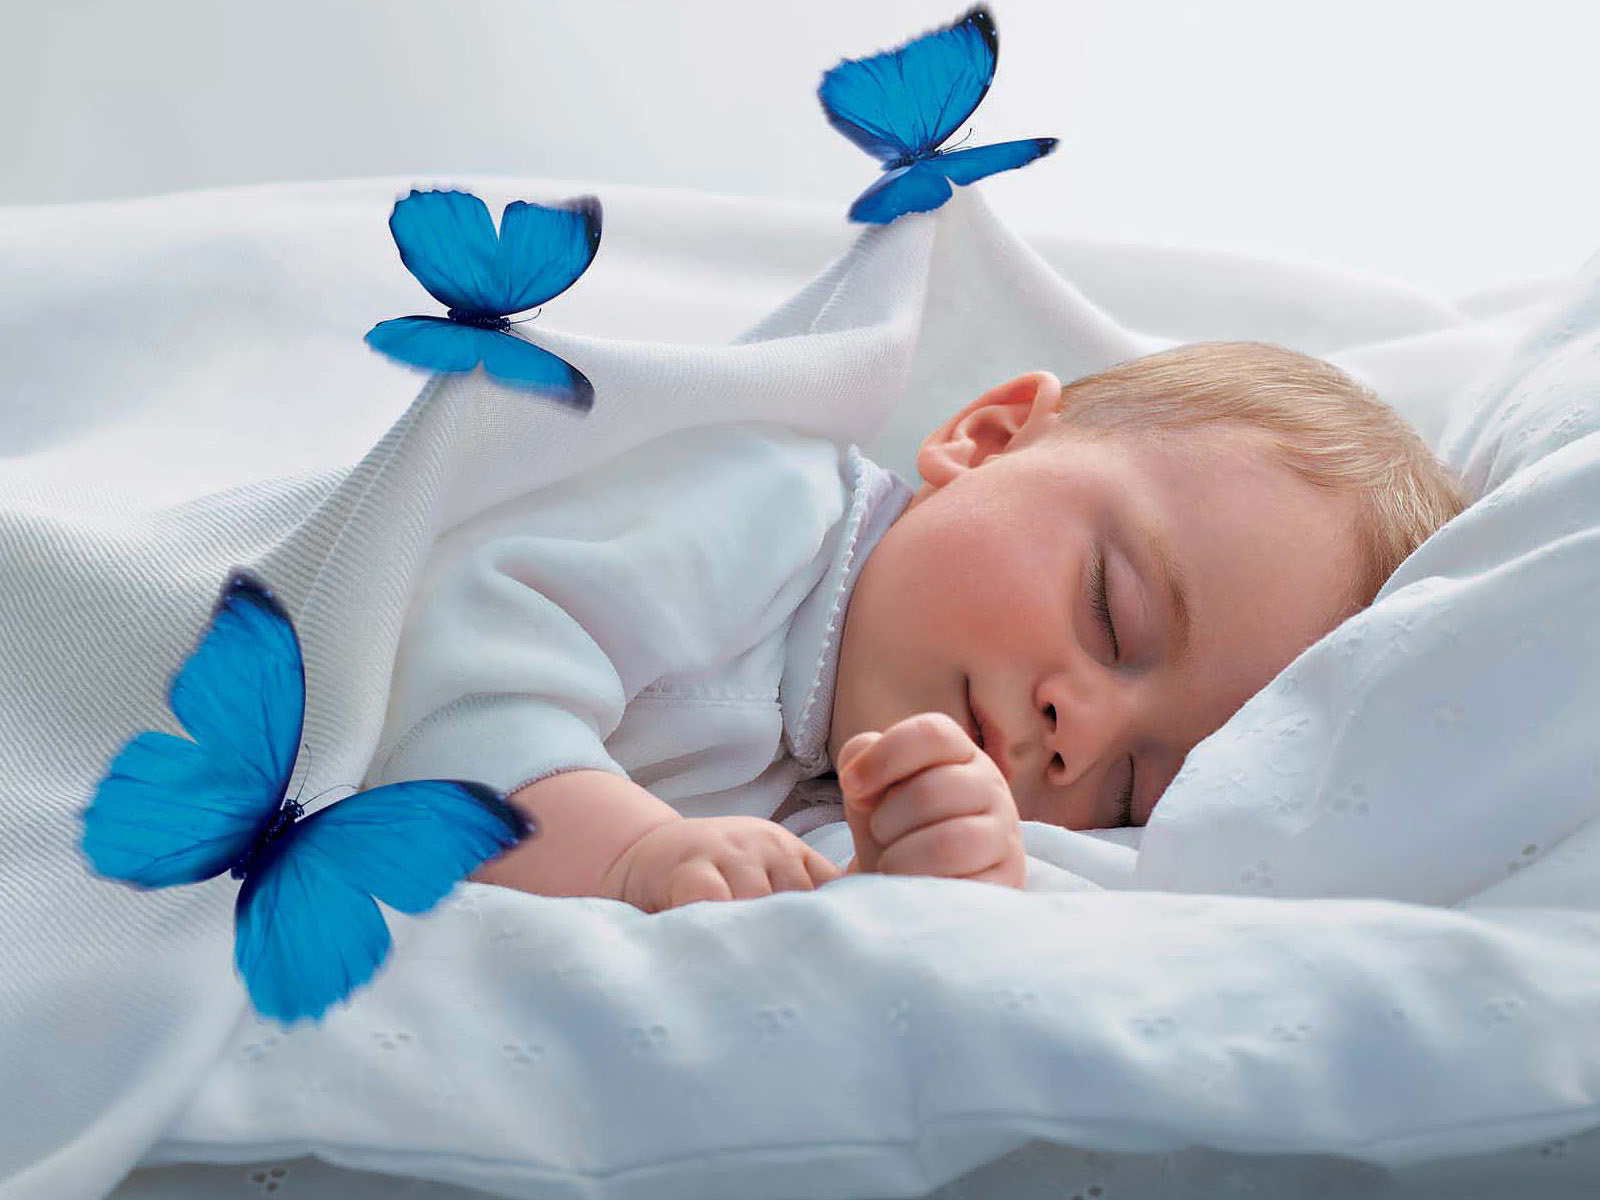 Baby Sleep - Good Night Sweet Dreams Hd - HD Wallpaper 